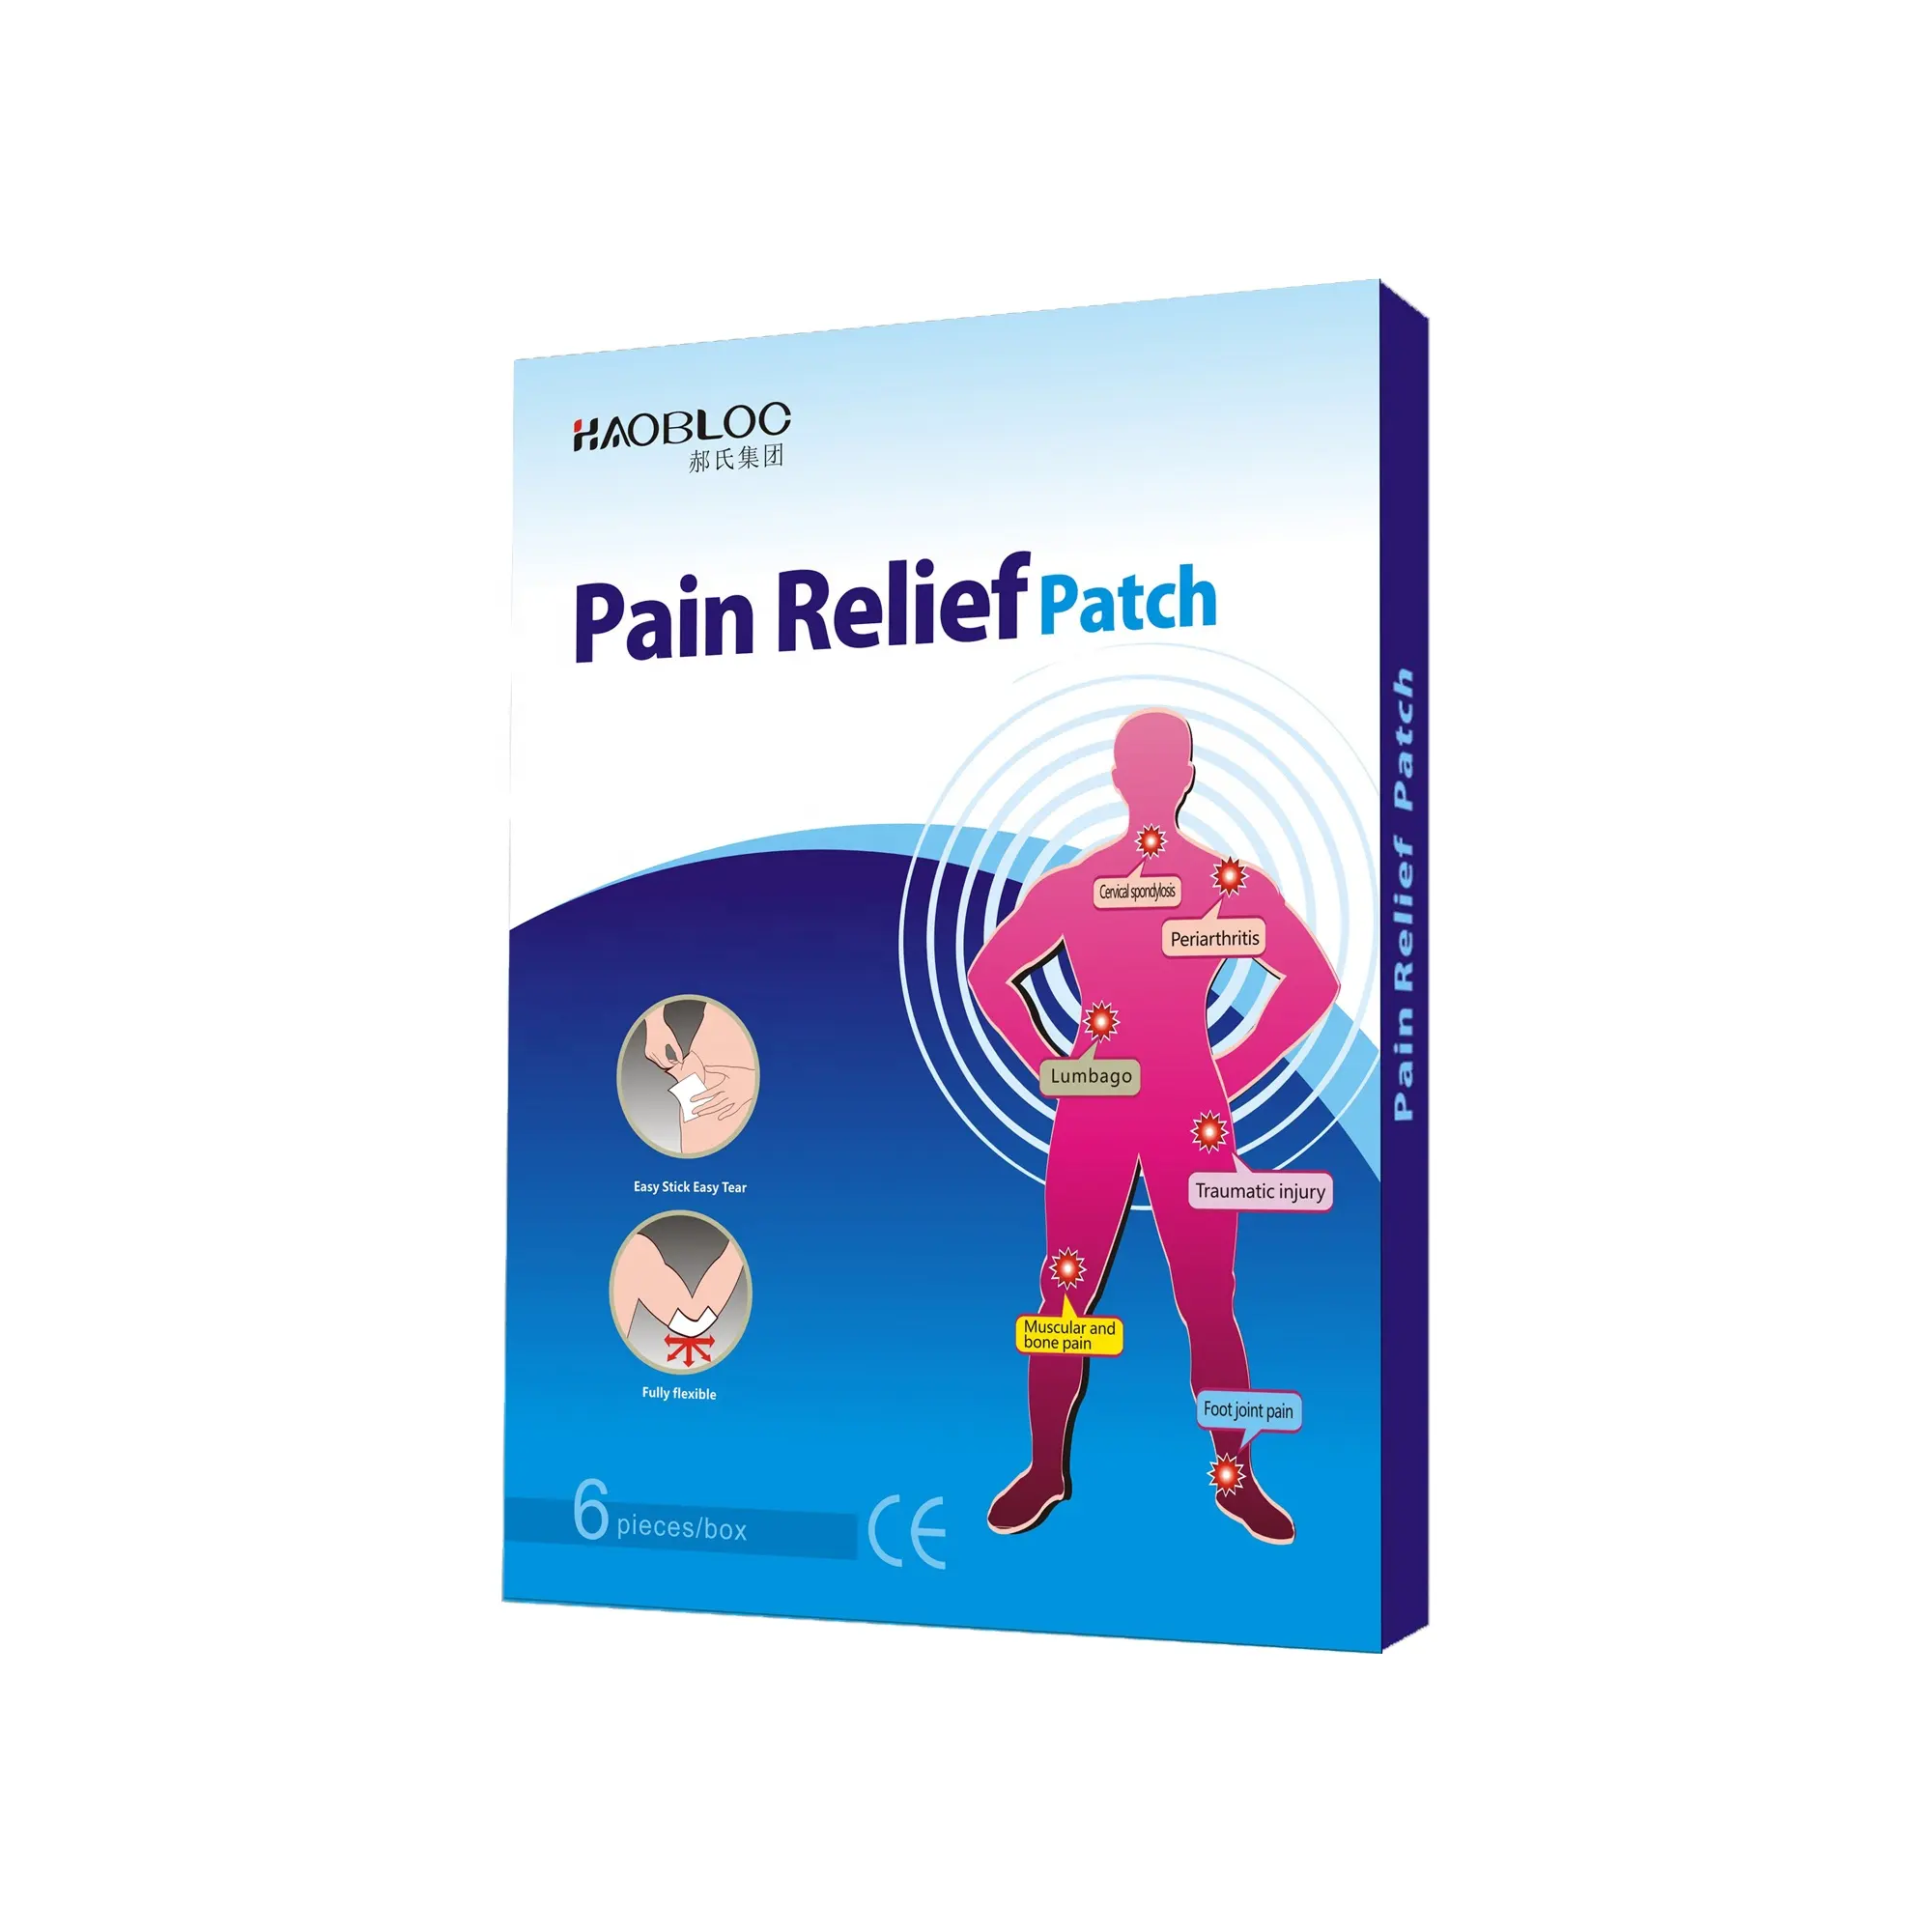 चुंबकीय प्लास्टर/दर्द घुटने मांसपेशियों में तनाव और पीठ दर्द से राहत स्टीकर